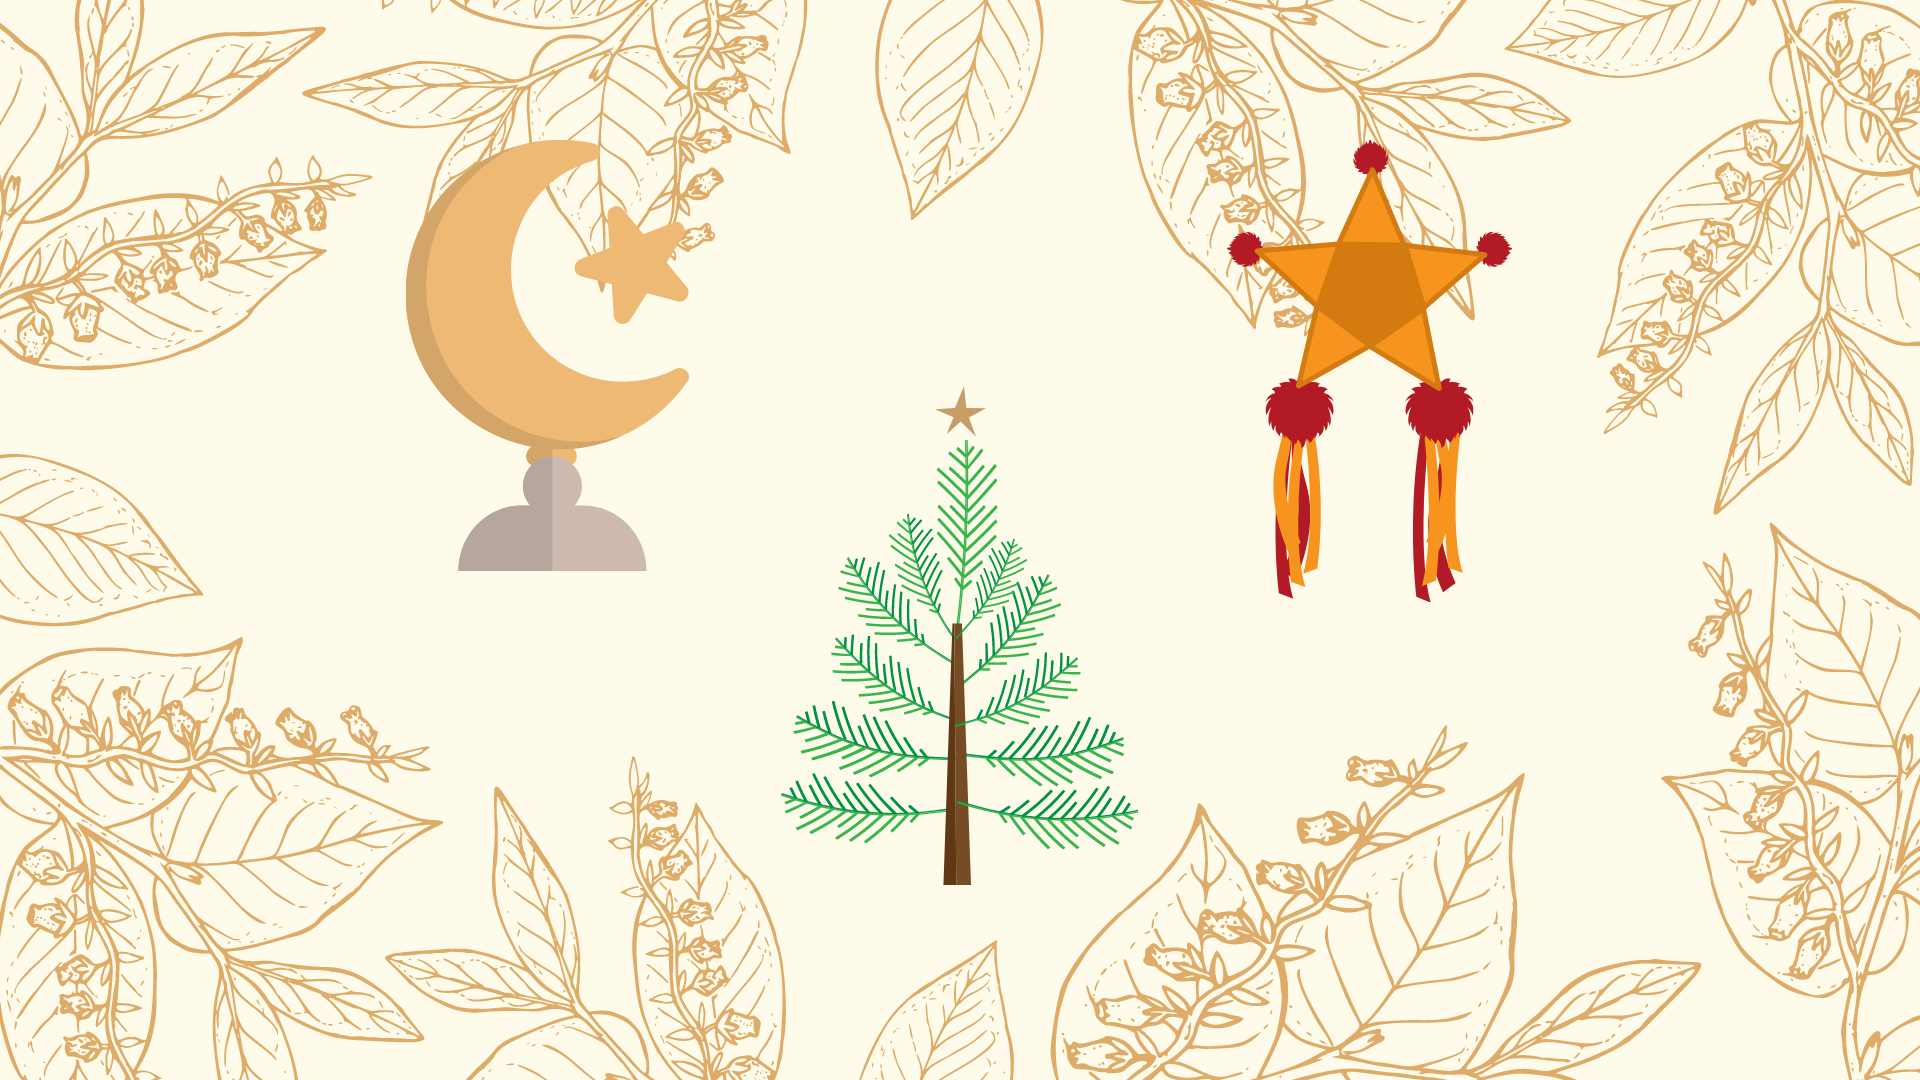 Drawing of holiday symbols